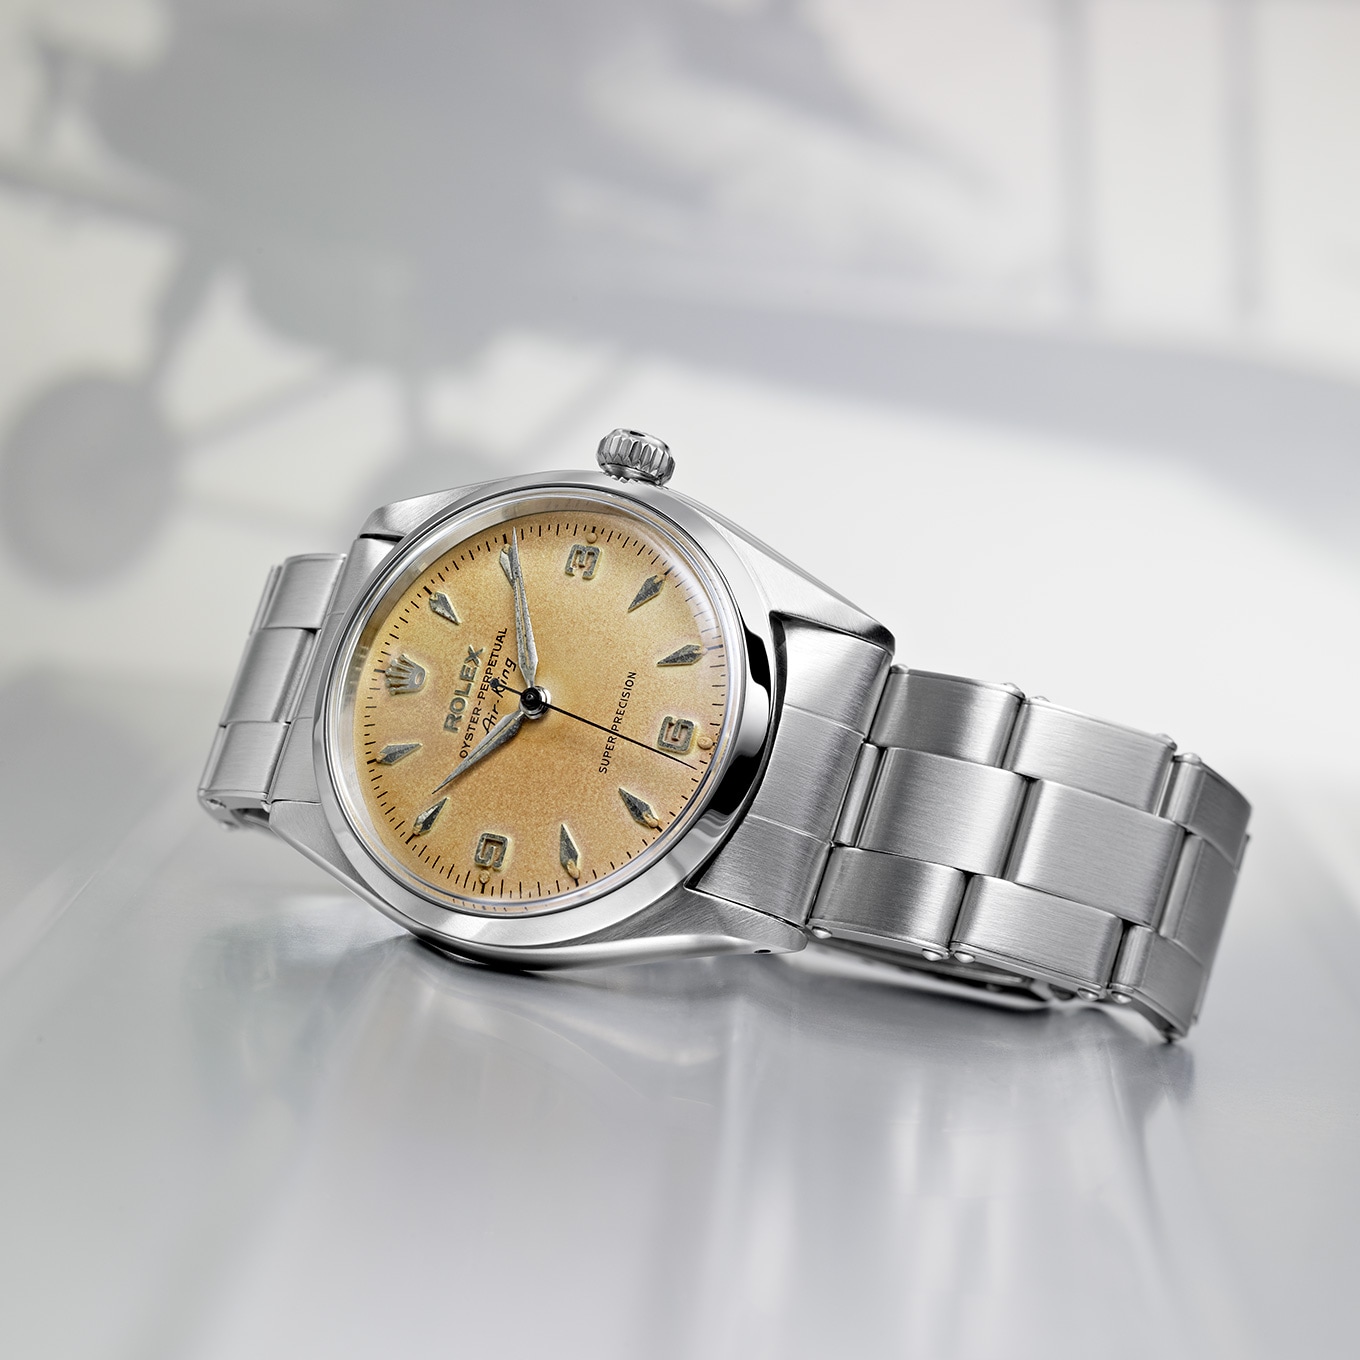 Rolex Rolex ROLEX Cellini Date 50519 Silver Dial New Watch Men's Watch